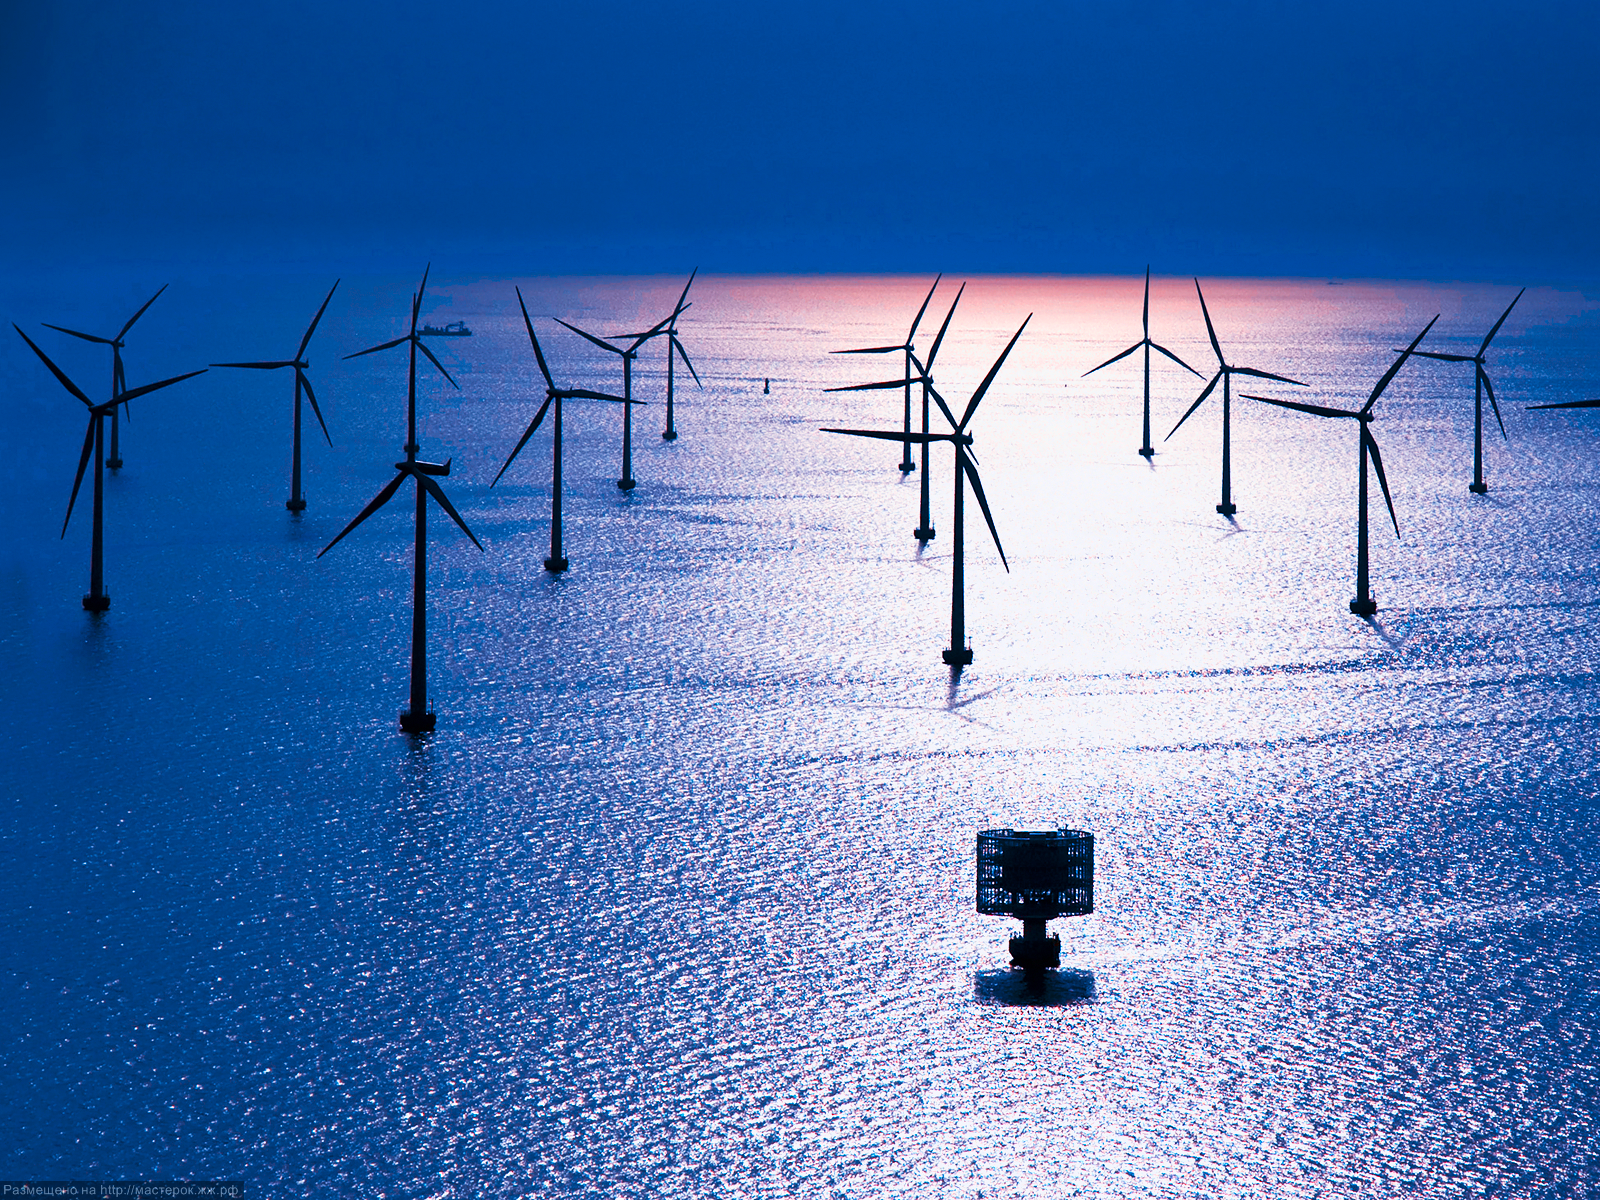 Hywind: Siemens und StatoilHydro installieren erste schwimmende Windenergieanlage / Hywind: Siemens and StatoilHydro install first floating wind turbine